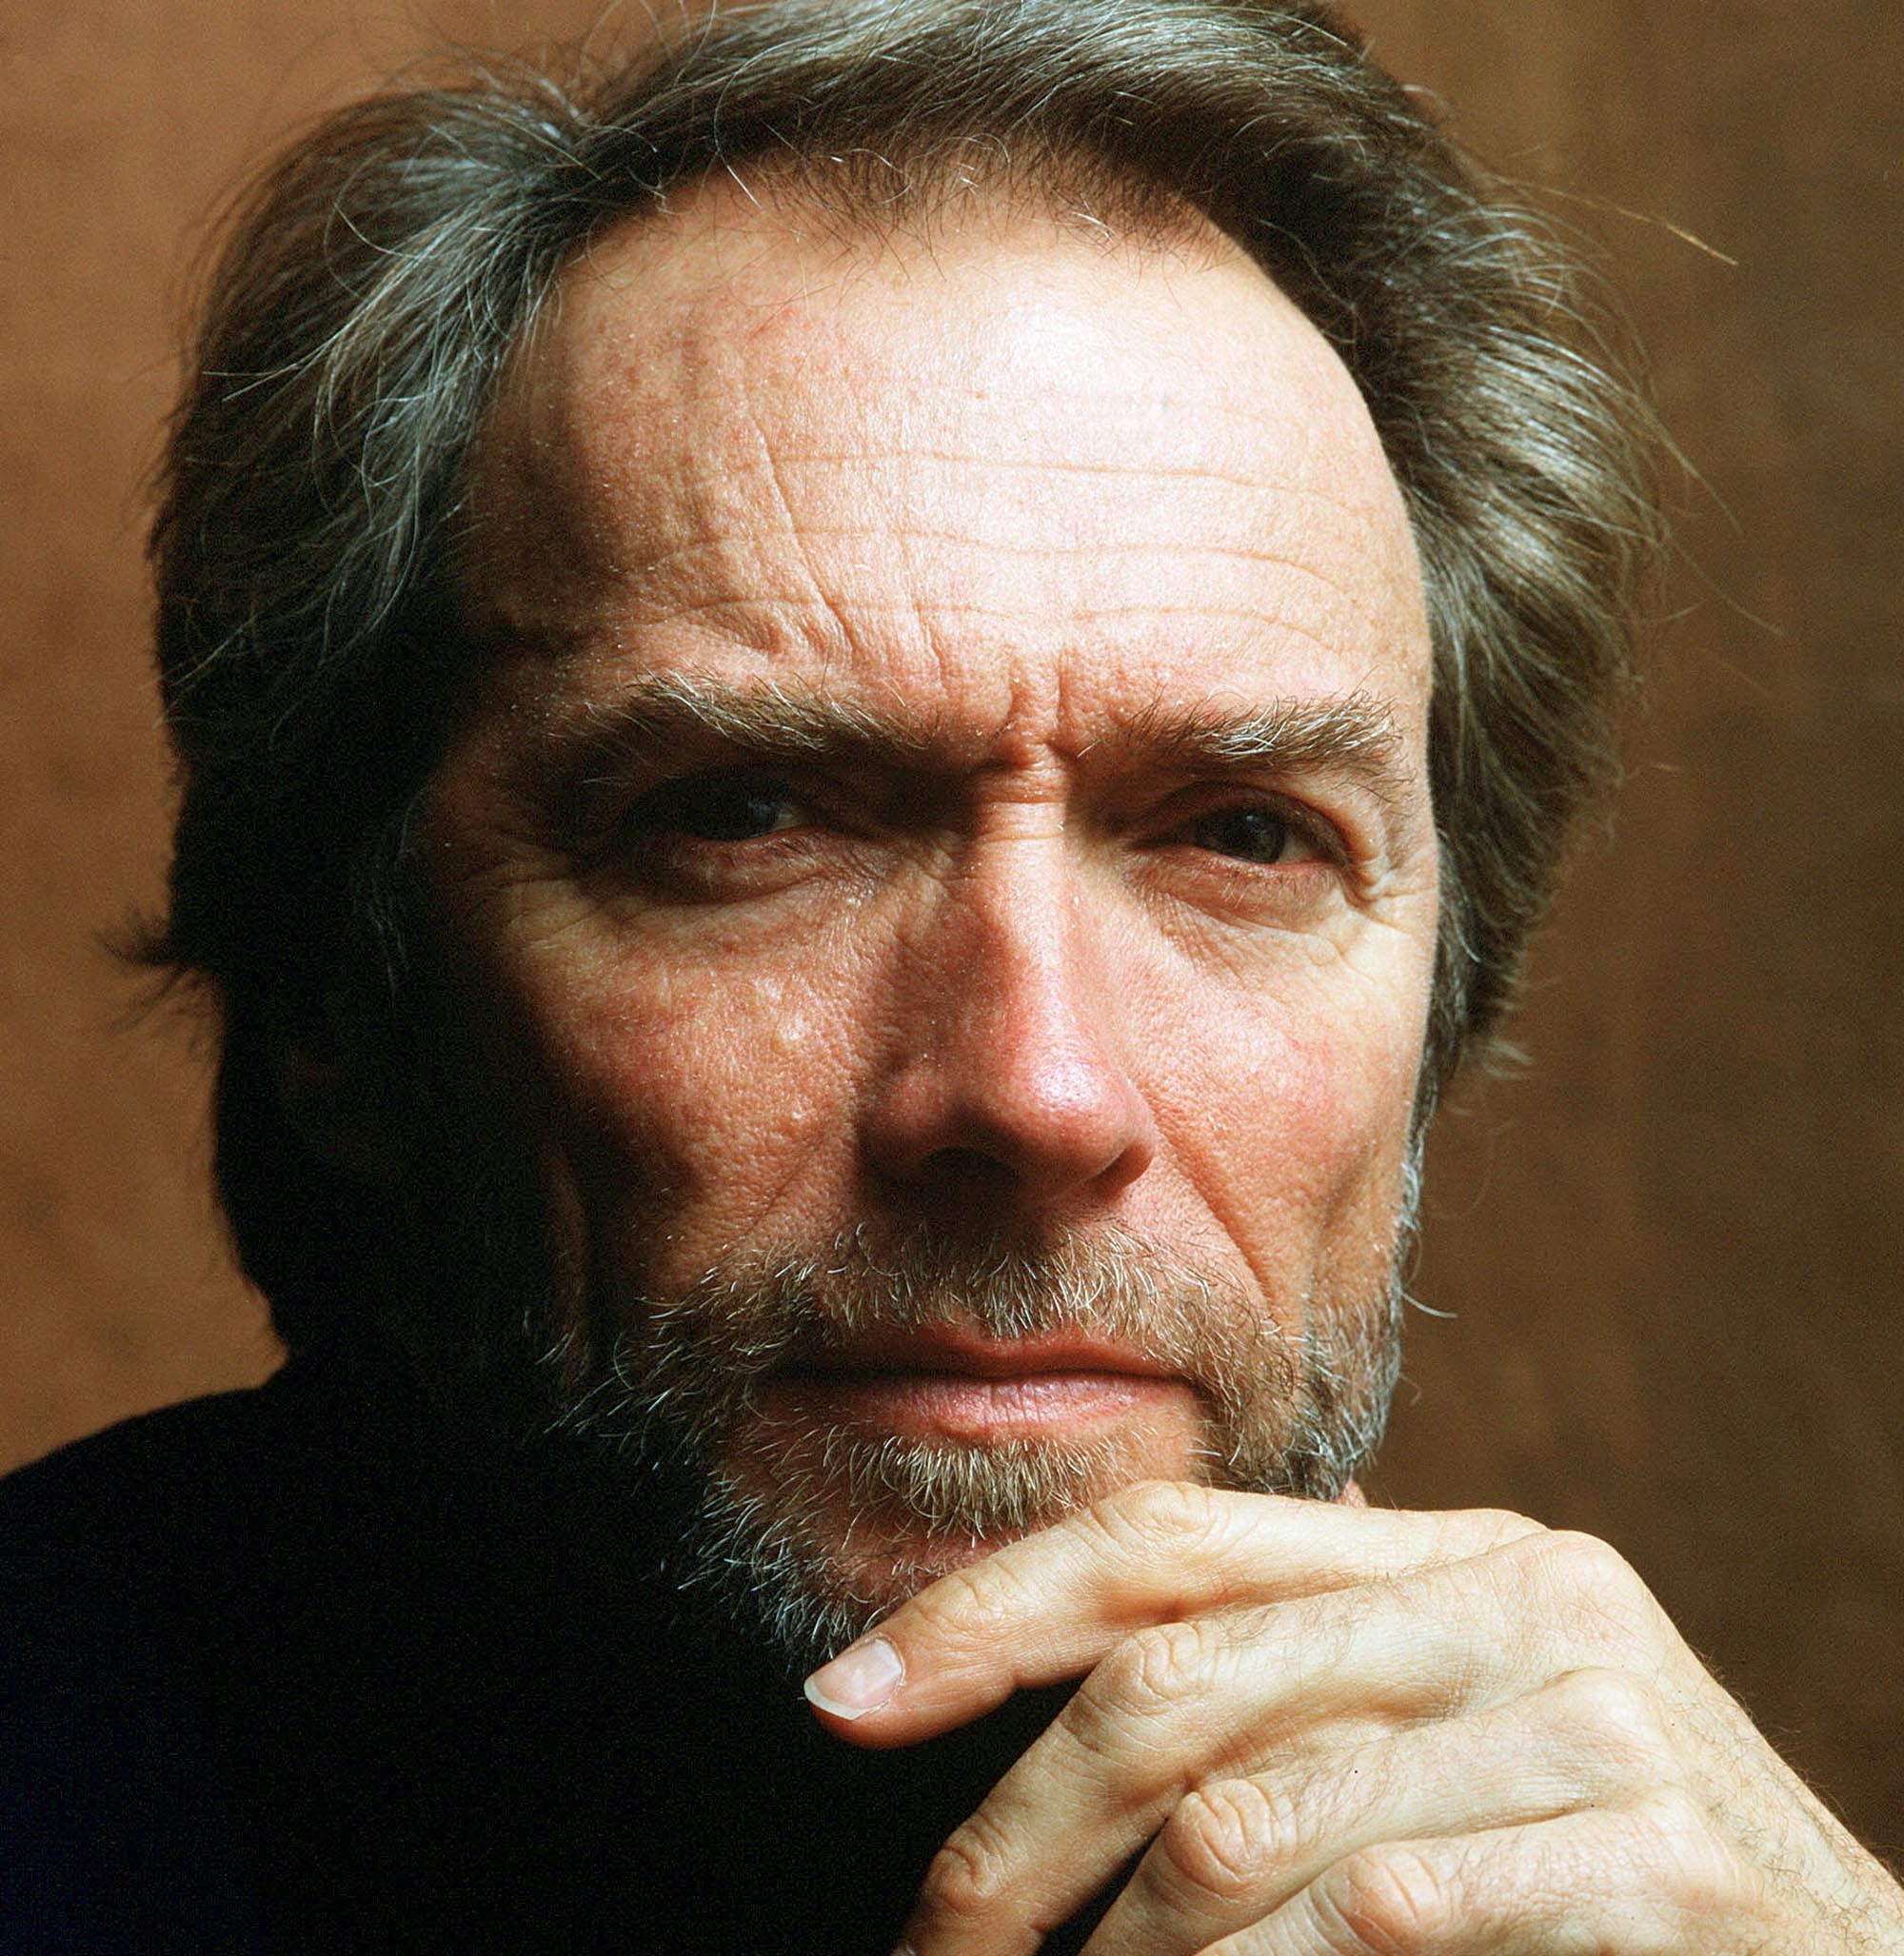 Clint Eastwood, actors - desktop wallpaper